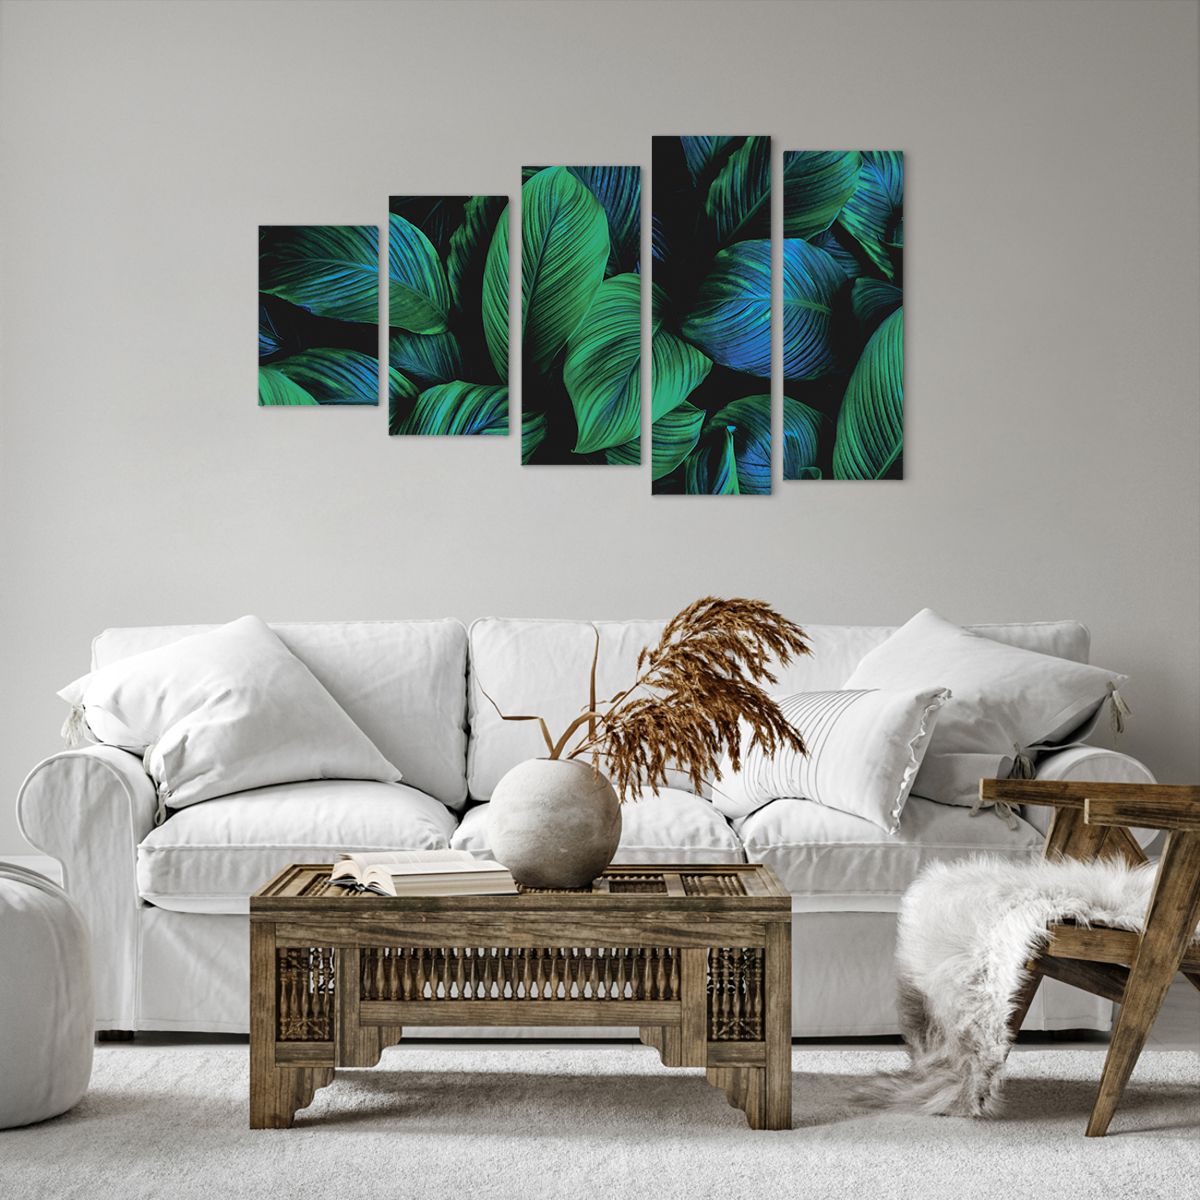 Bild auf Leinwand Grüne Blätter, Bild auf Leinwand Tropische Pflanze, Bild auf Leinwand Natur, Bild auf Leinwand Kunst, Bild auf Leinwand Tropen